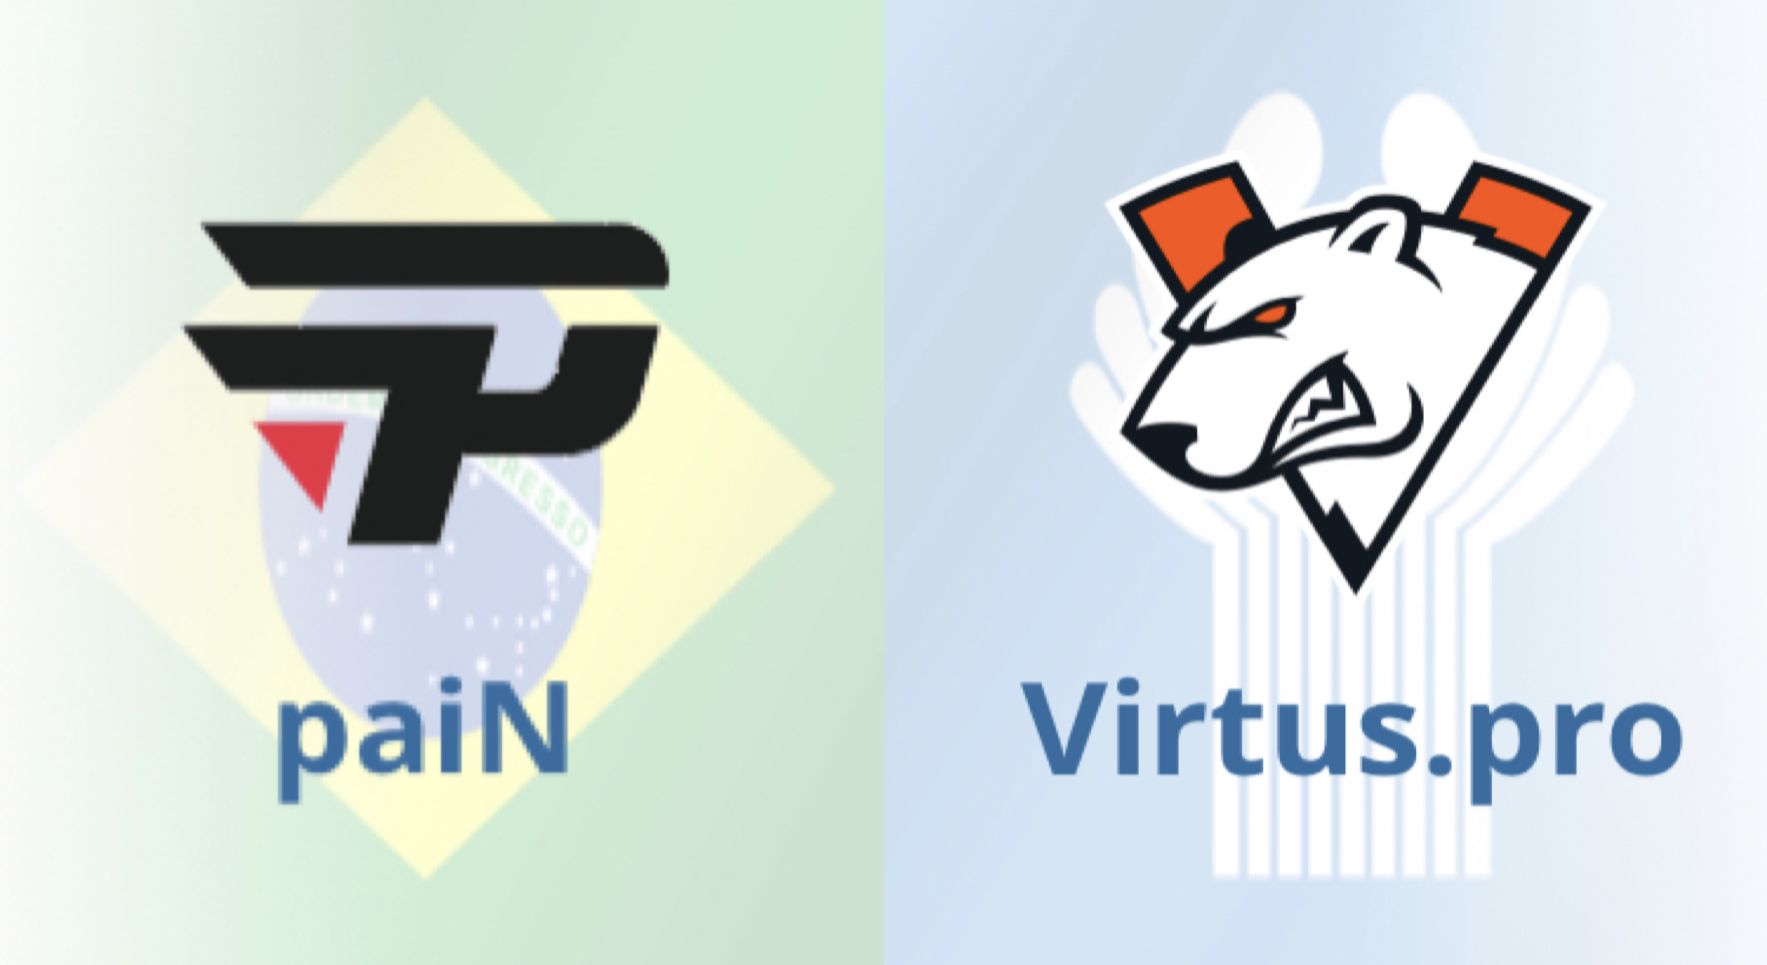 Pain Gaming — Virtus.pro: прямая трансляция PGL Major Stockholm 2021: Challengers Stage